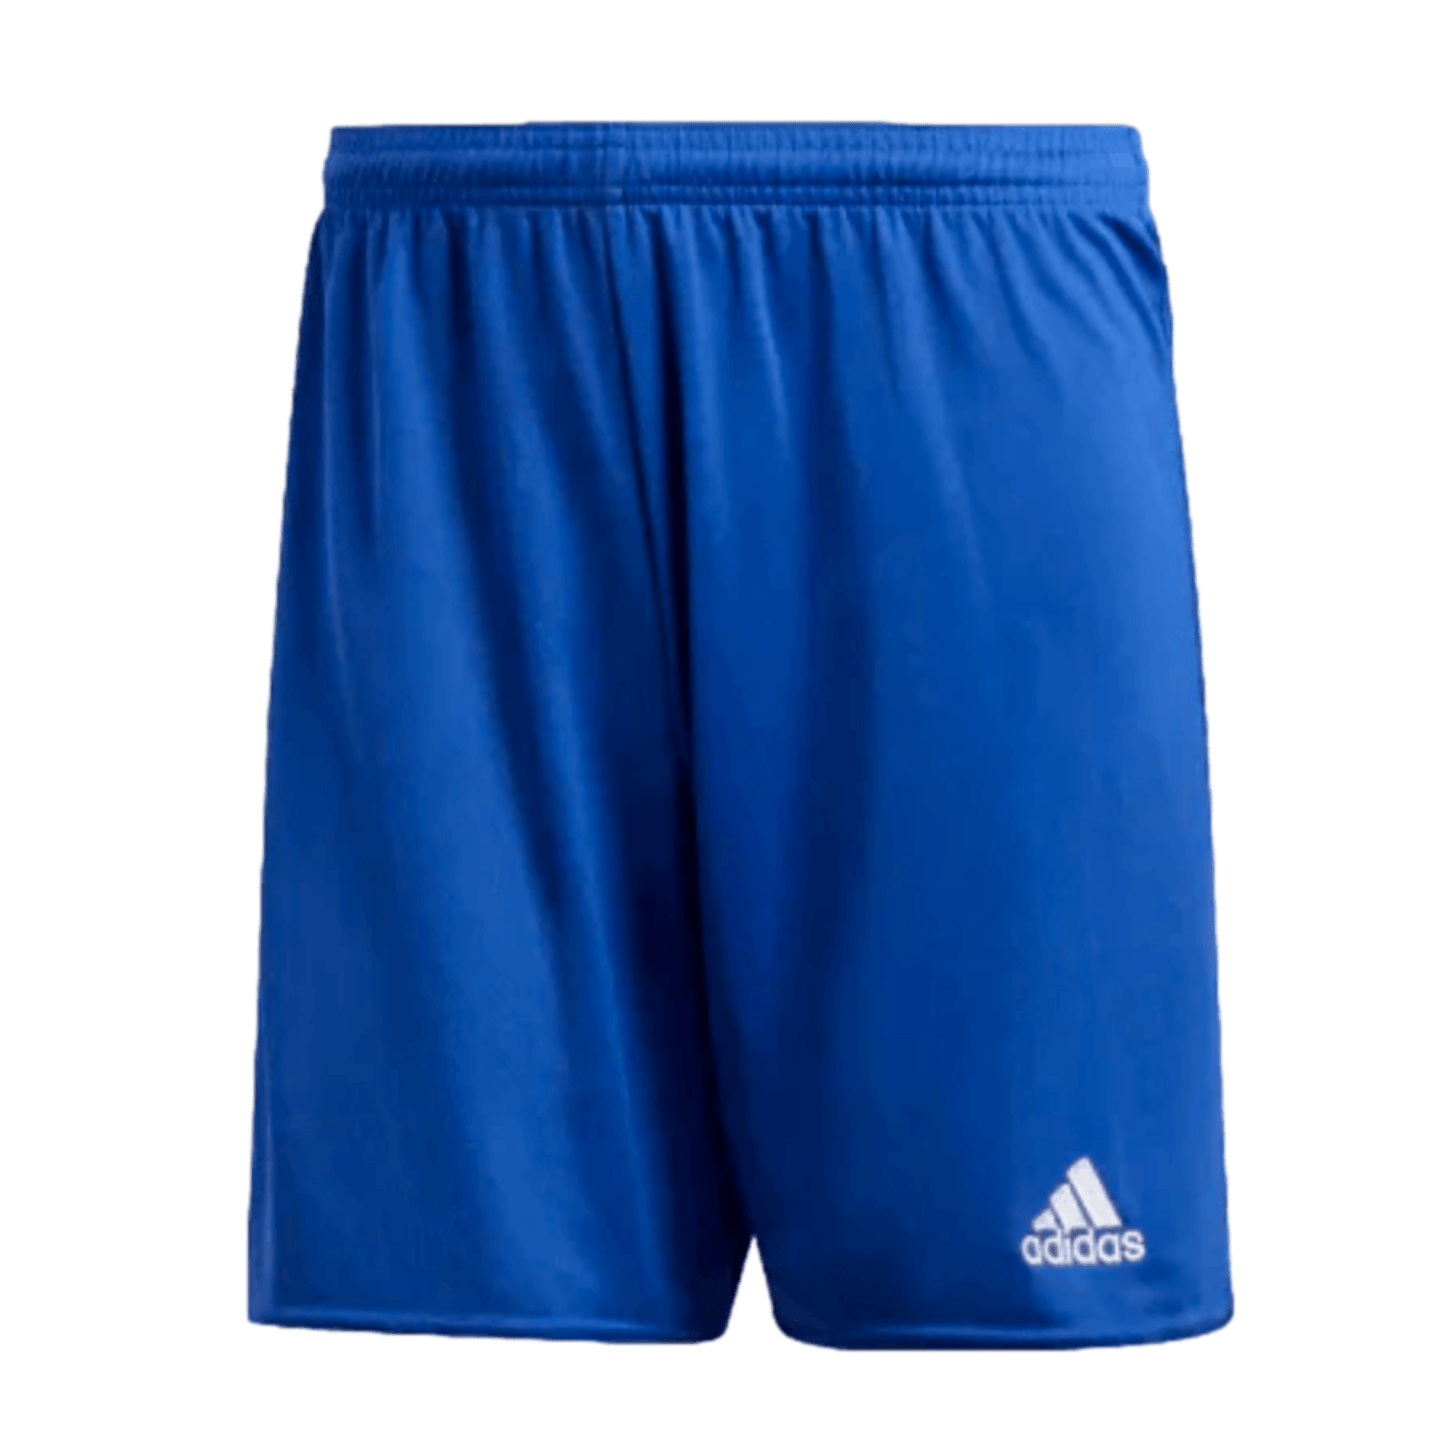 Adidas Parma 16 Youth Shorts